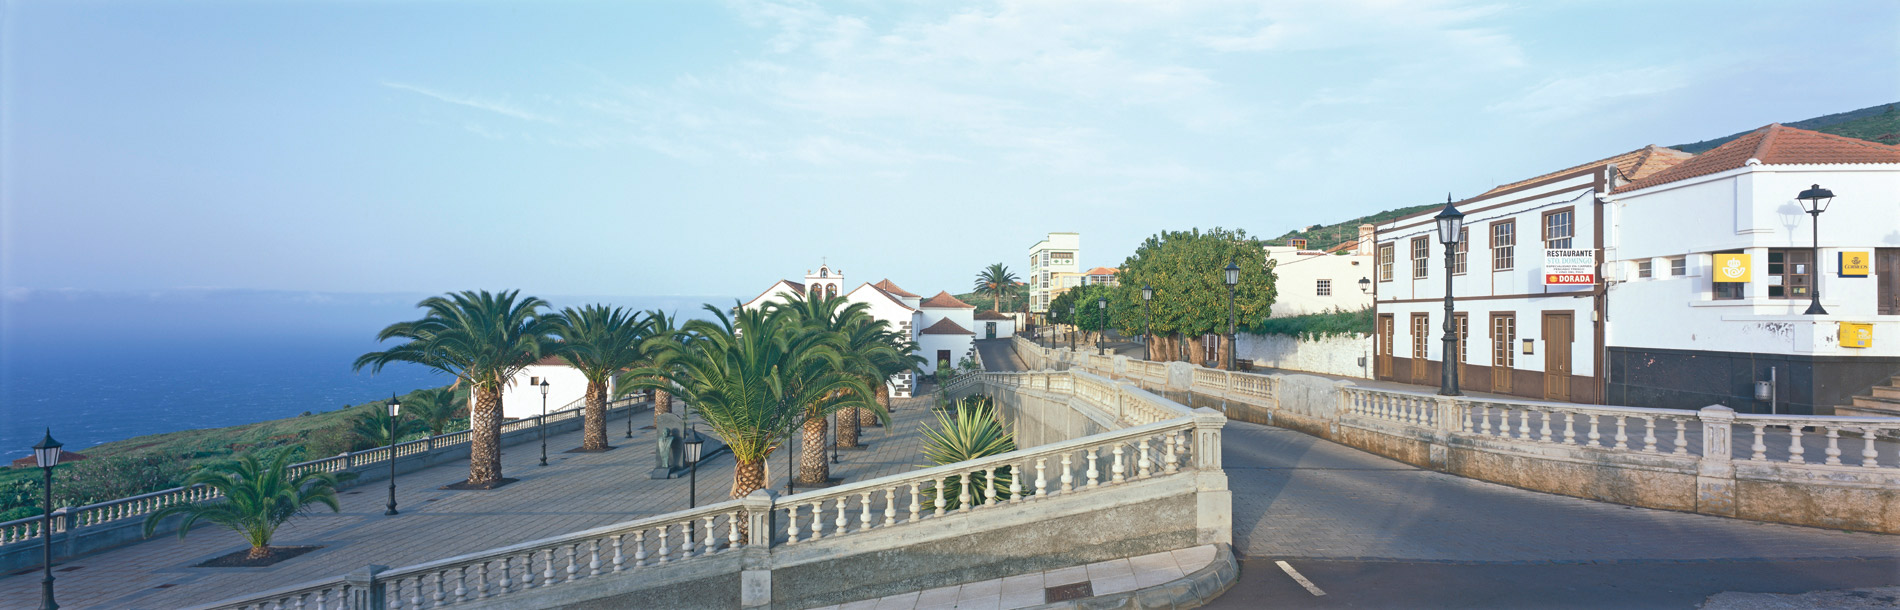 Innenstadt von La Palma